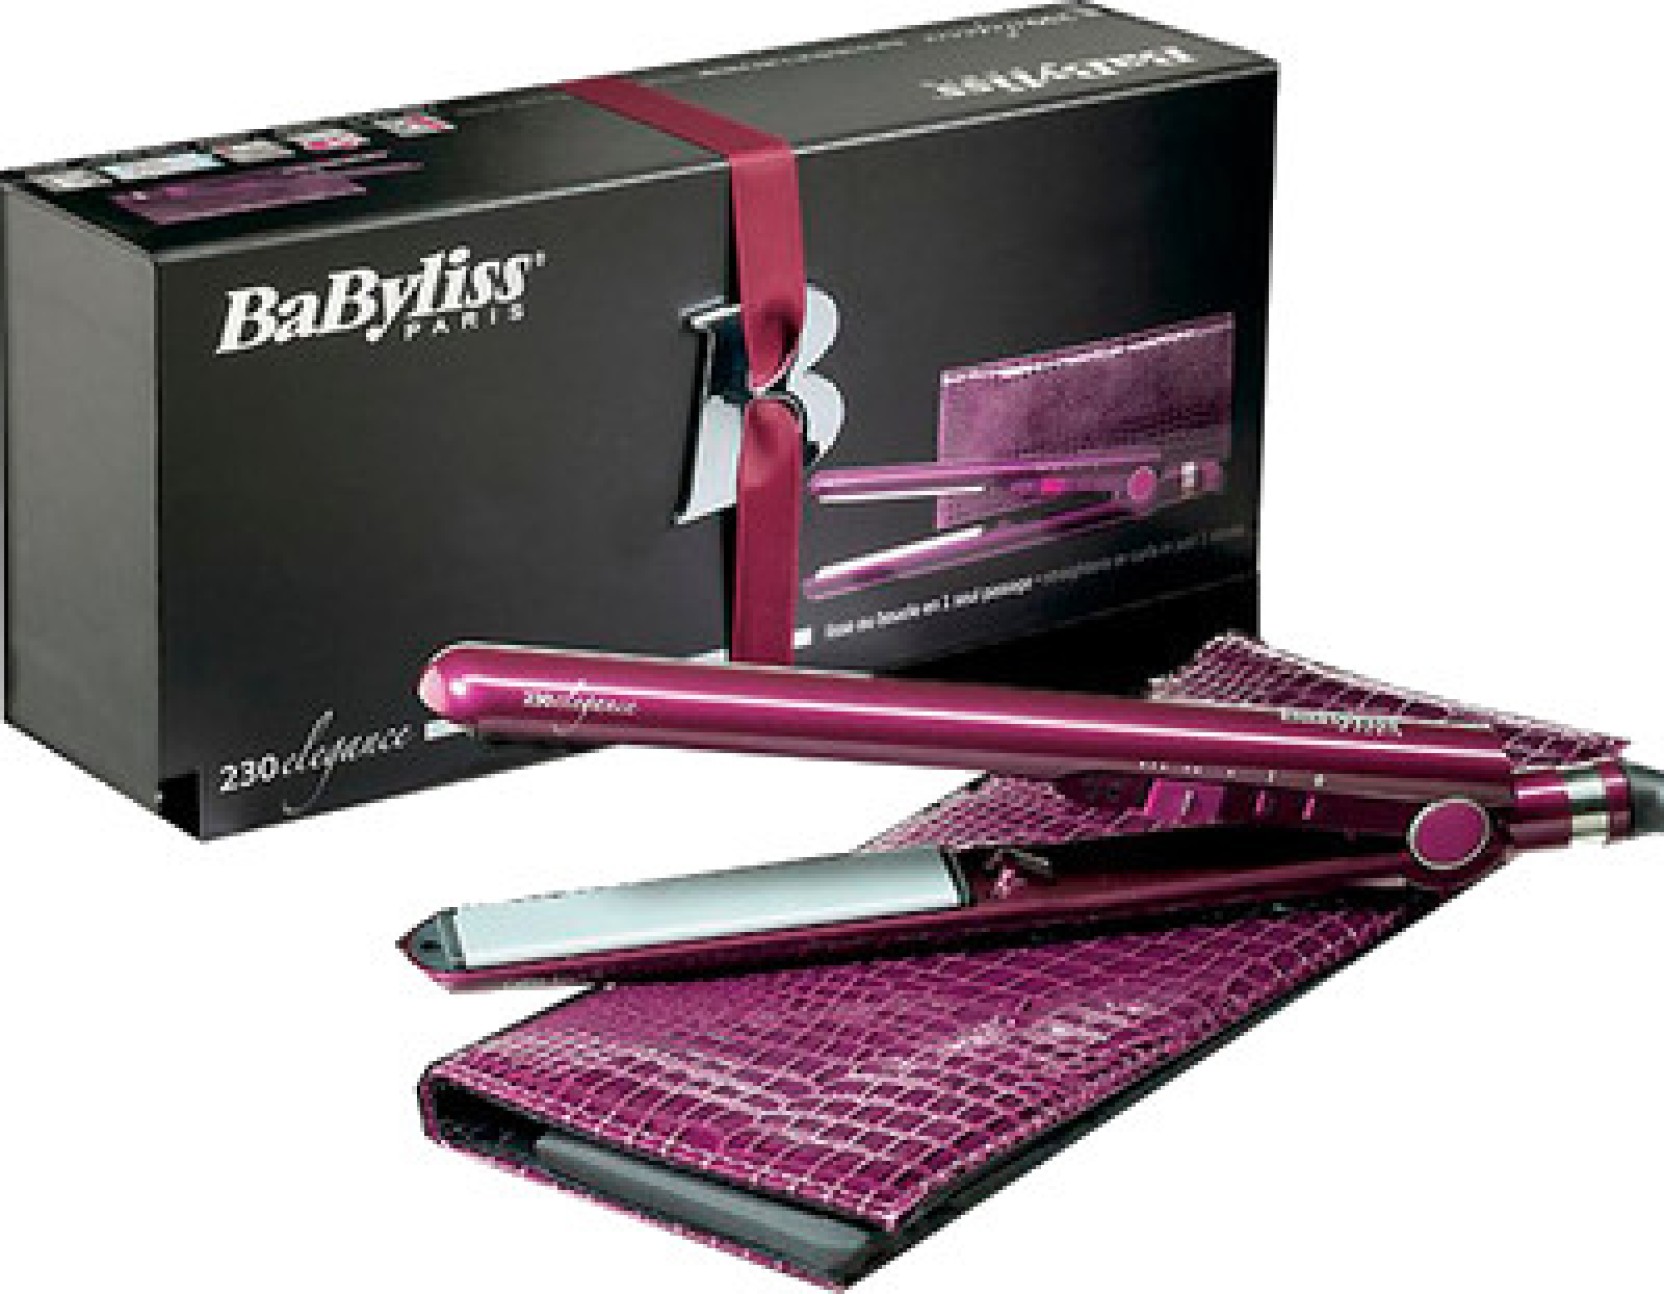 babyliss-st100e-hair-straightener-babyliss-flipkart